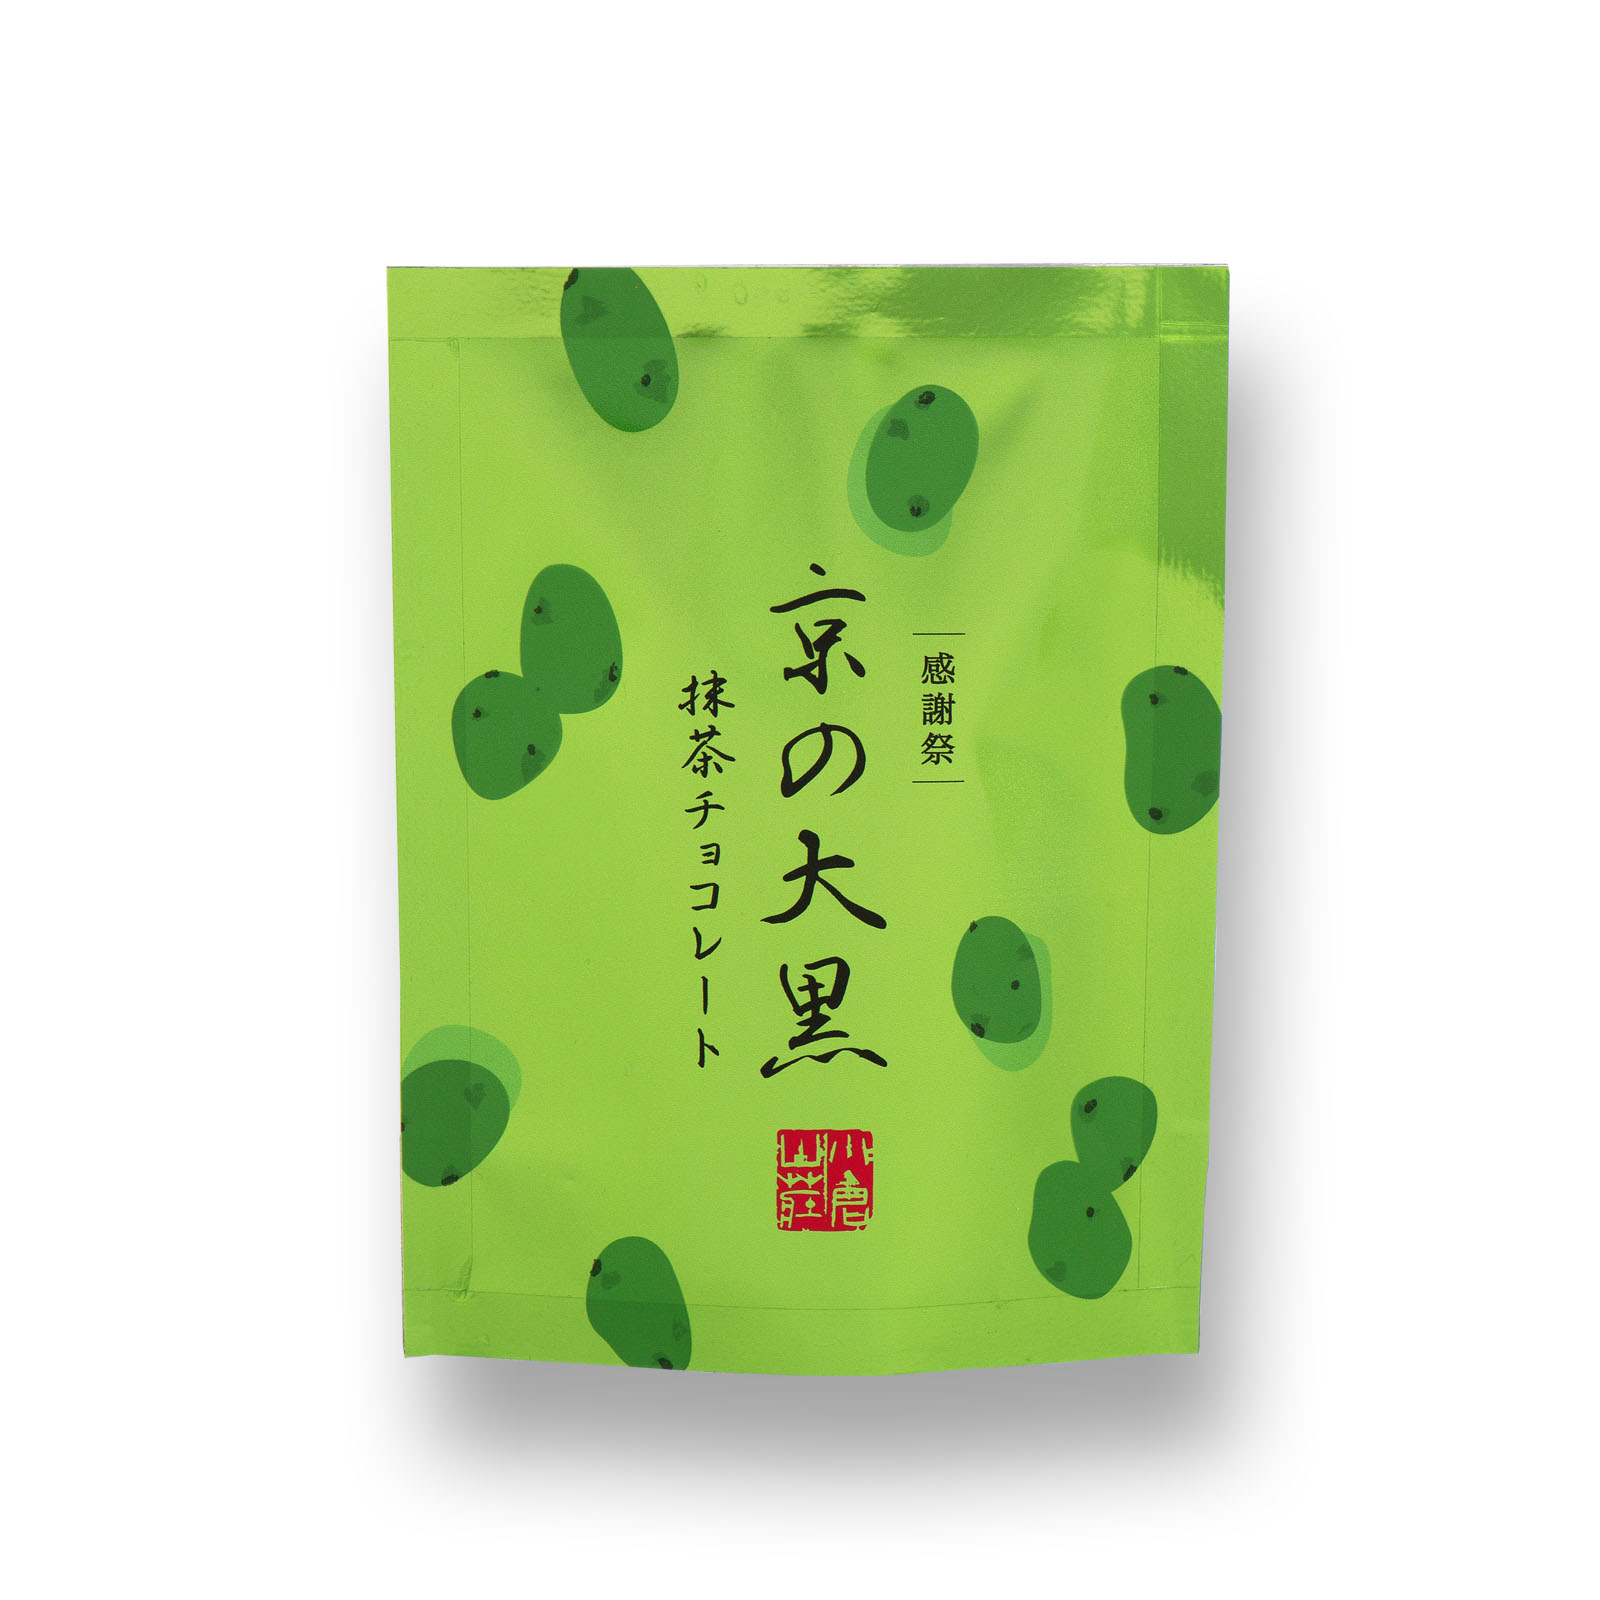 2月25日販売予定【感謝祭限定】京の大黒 抹茶チョコレート